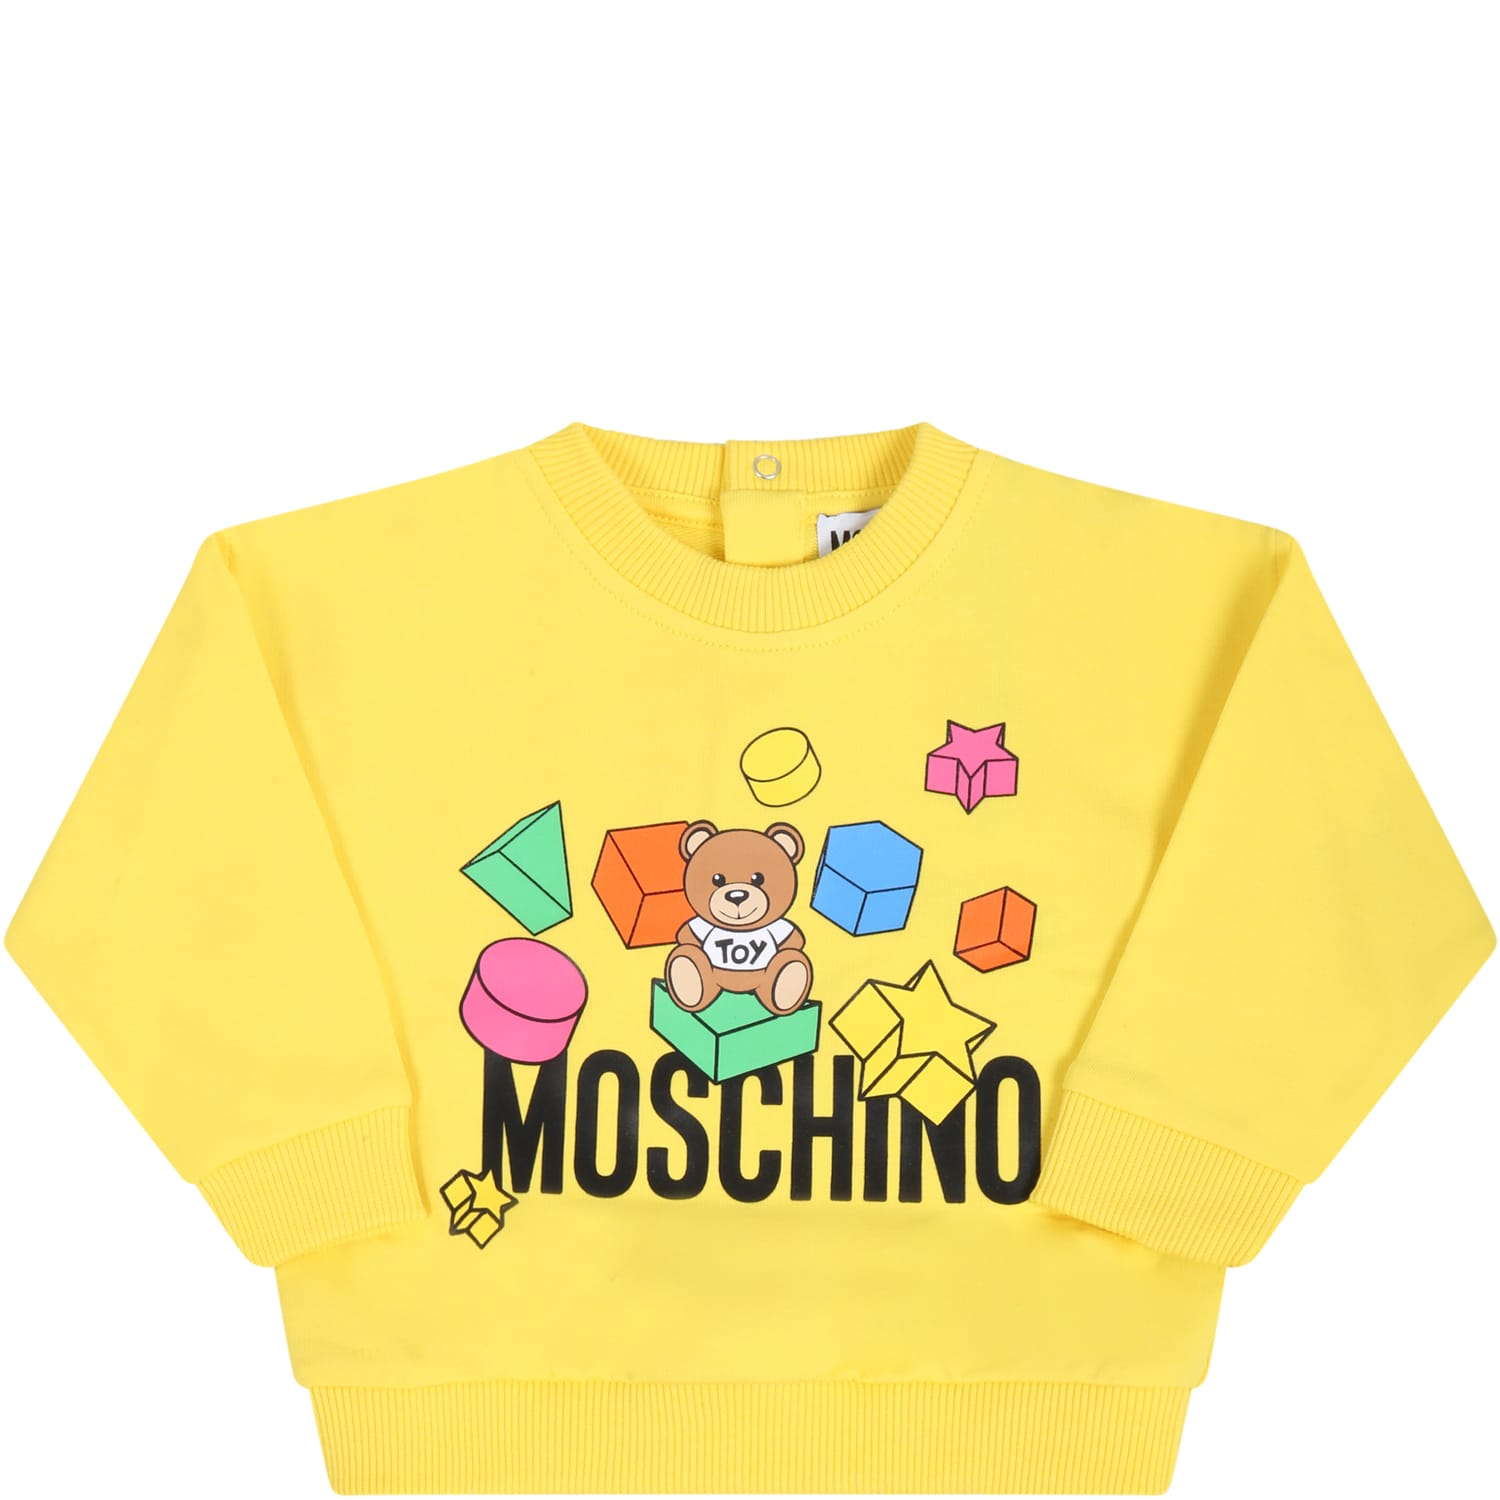 Moschino Yellow Sweatshirt For Babykids